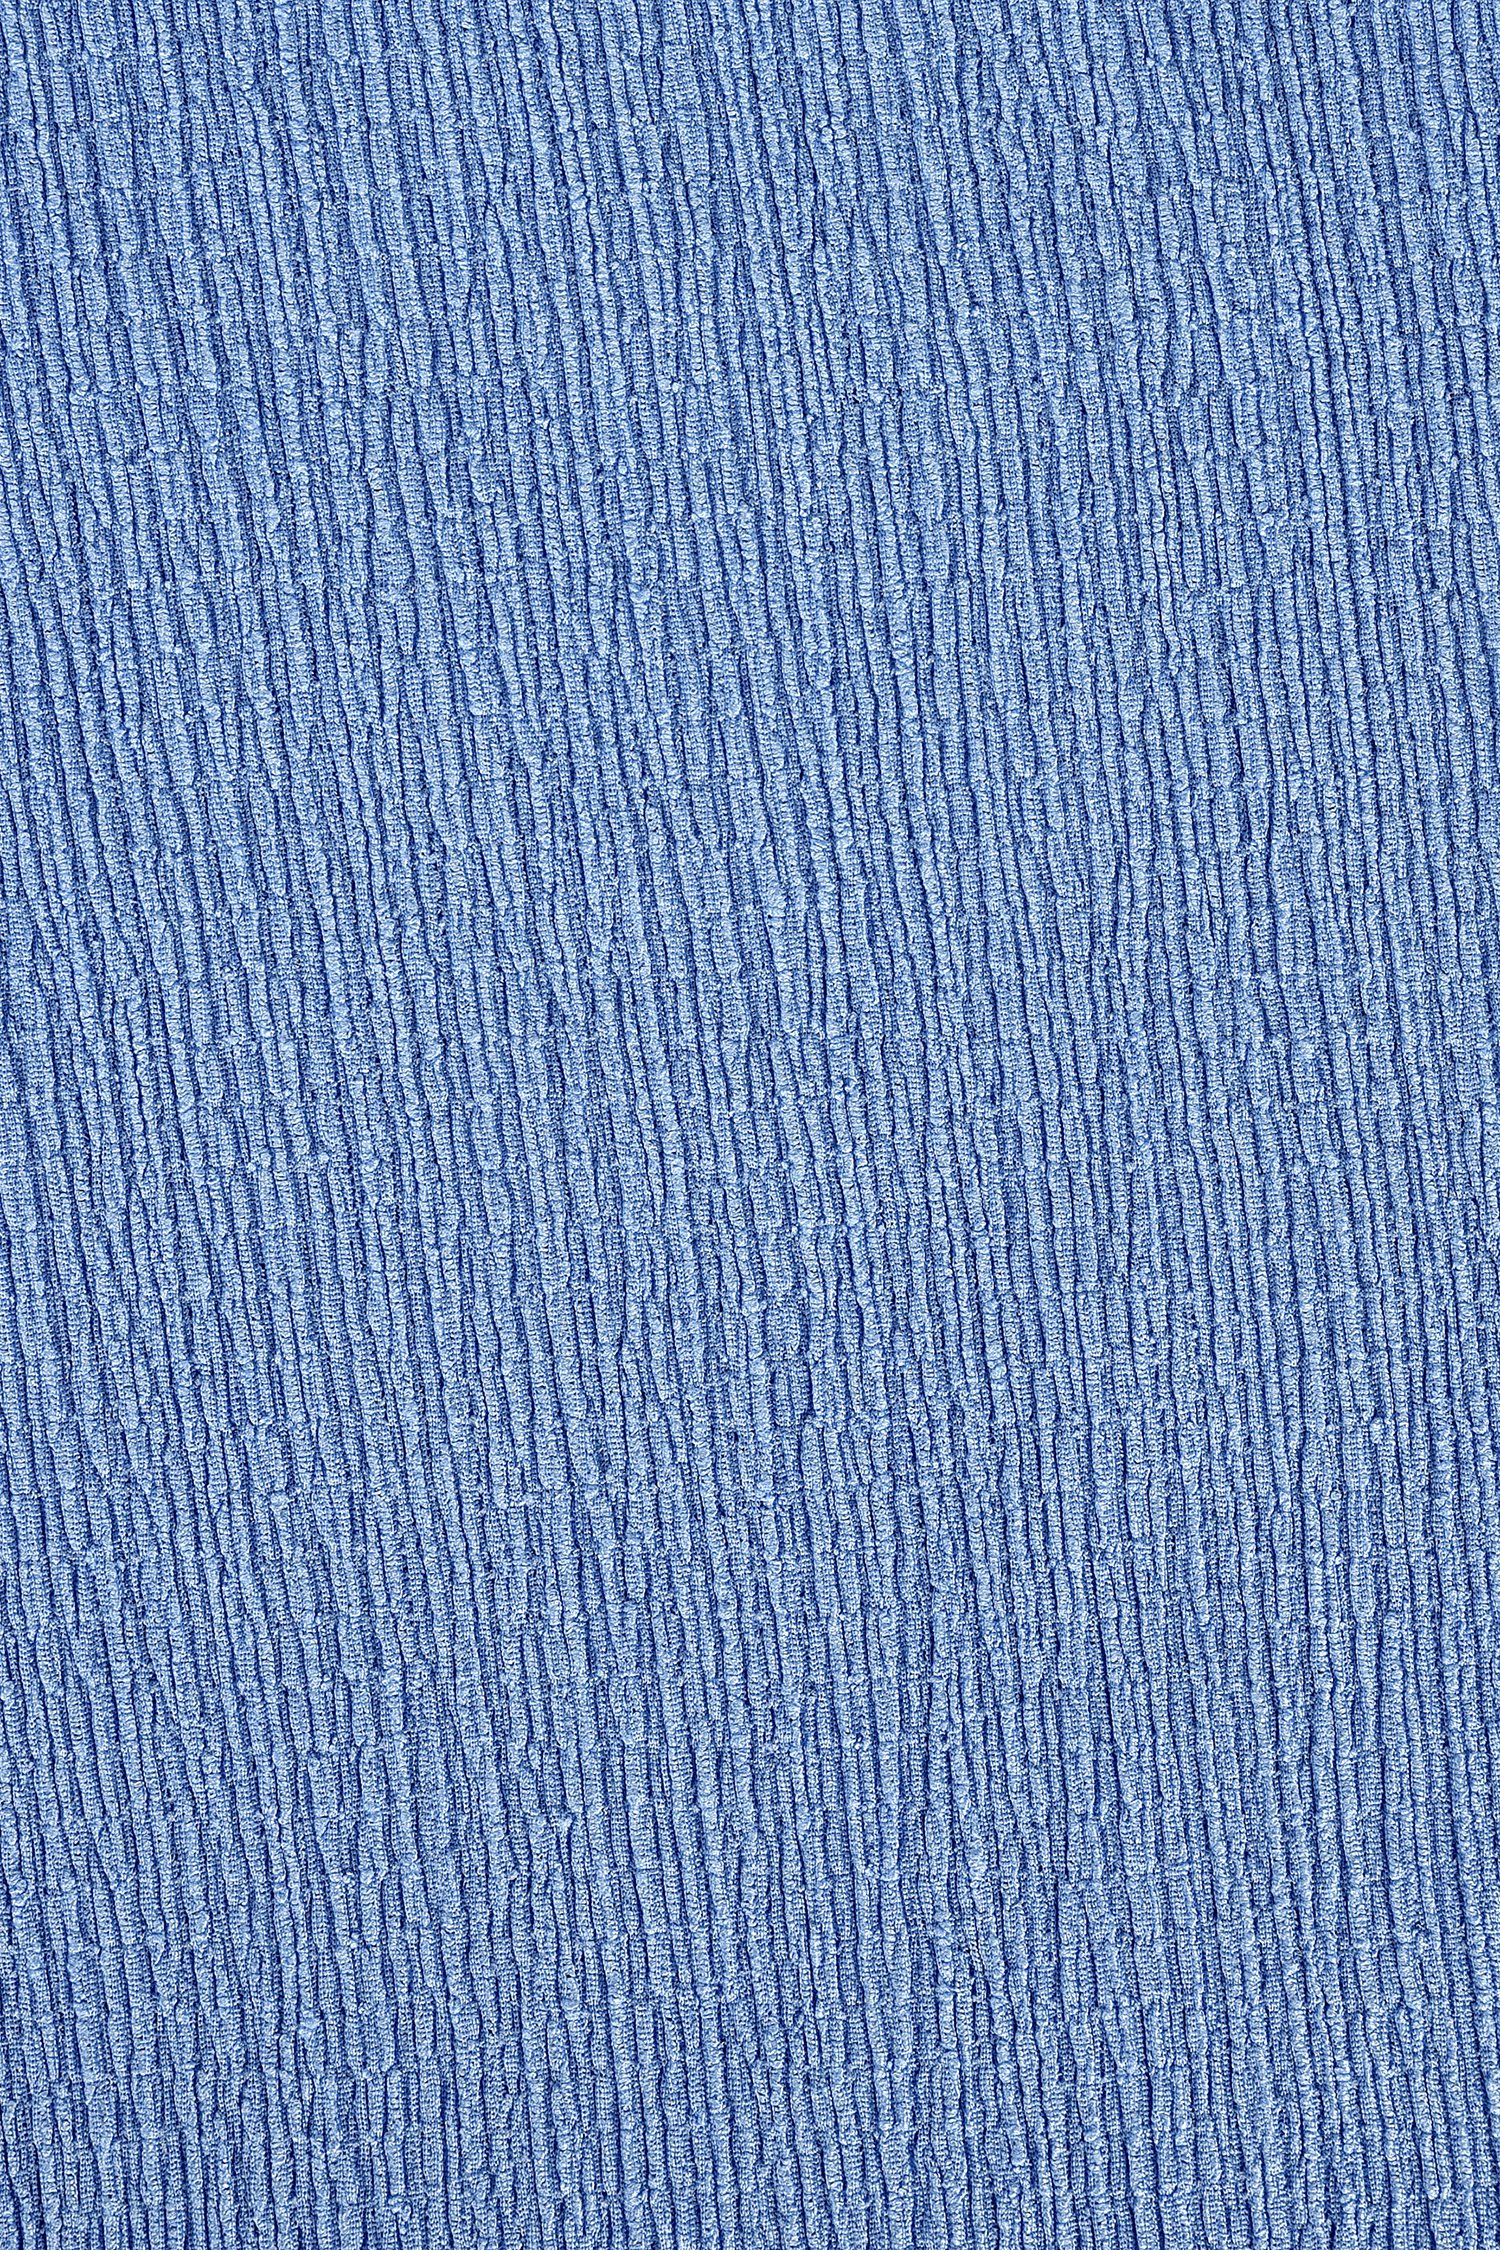 Blauwe wijde broek in textuurstof van Bicalla voor Dames